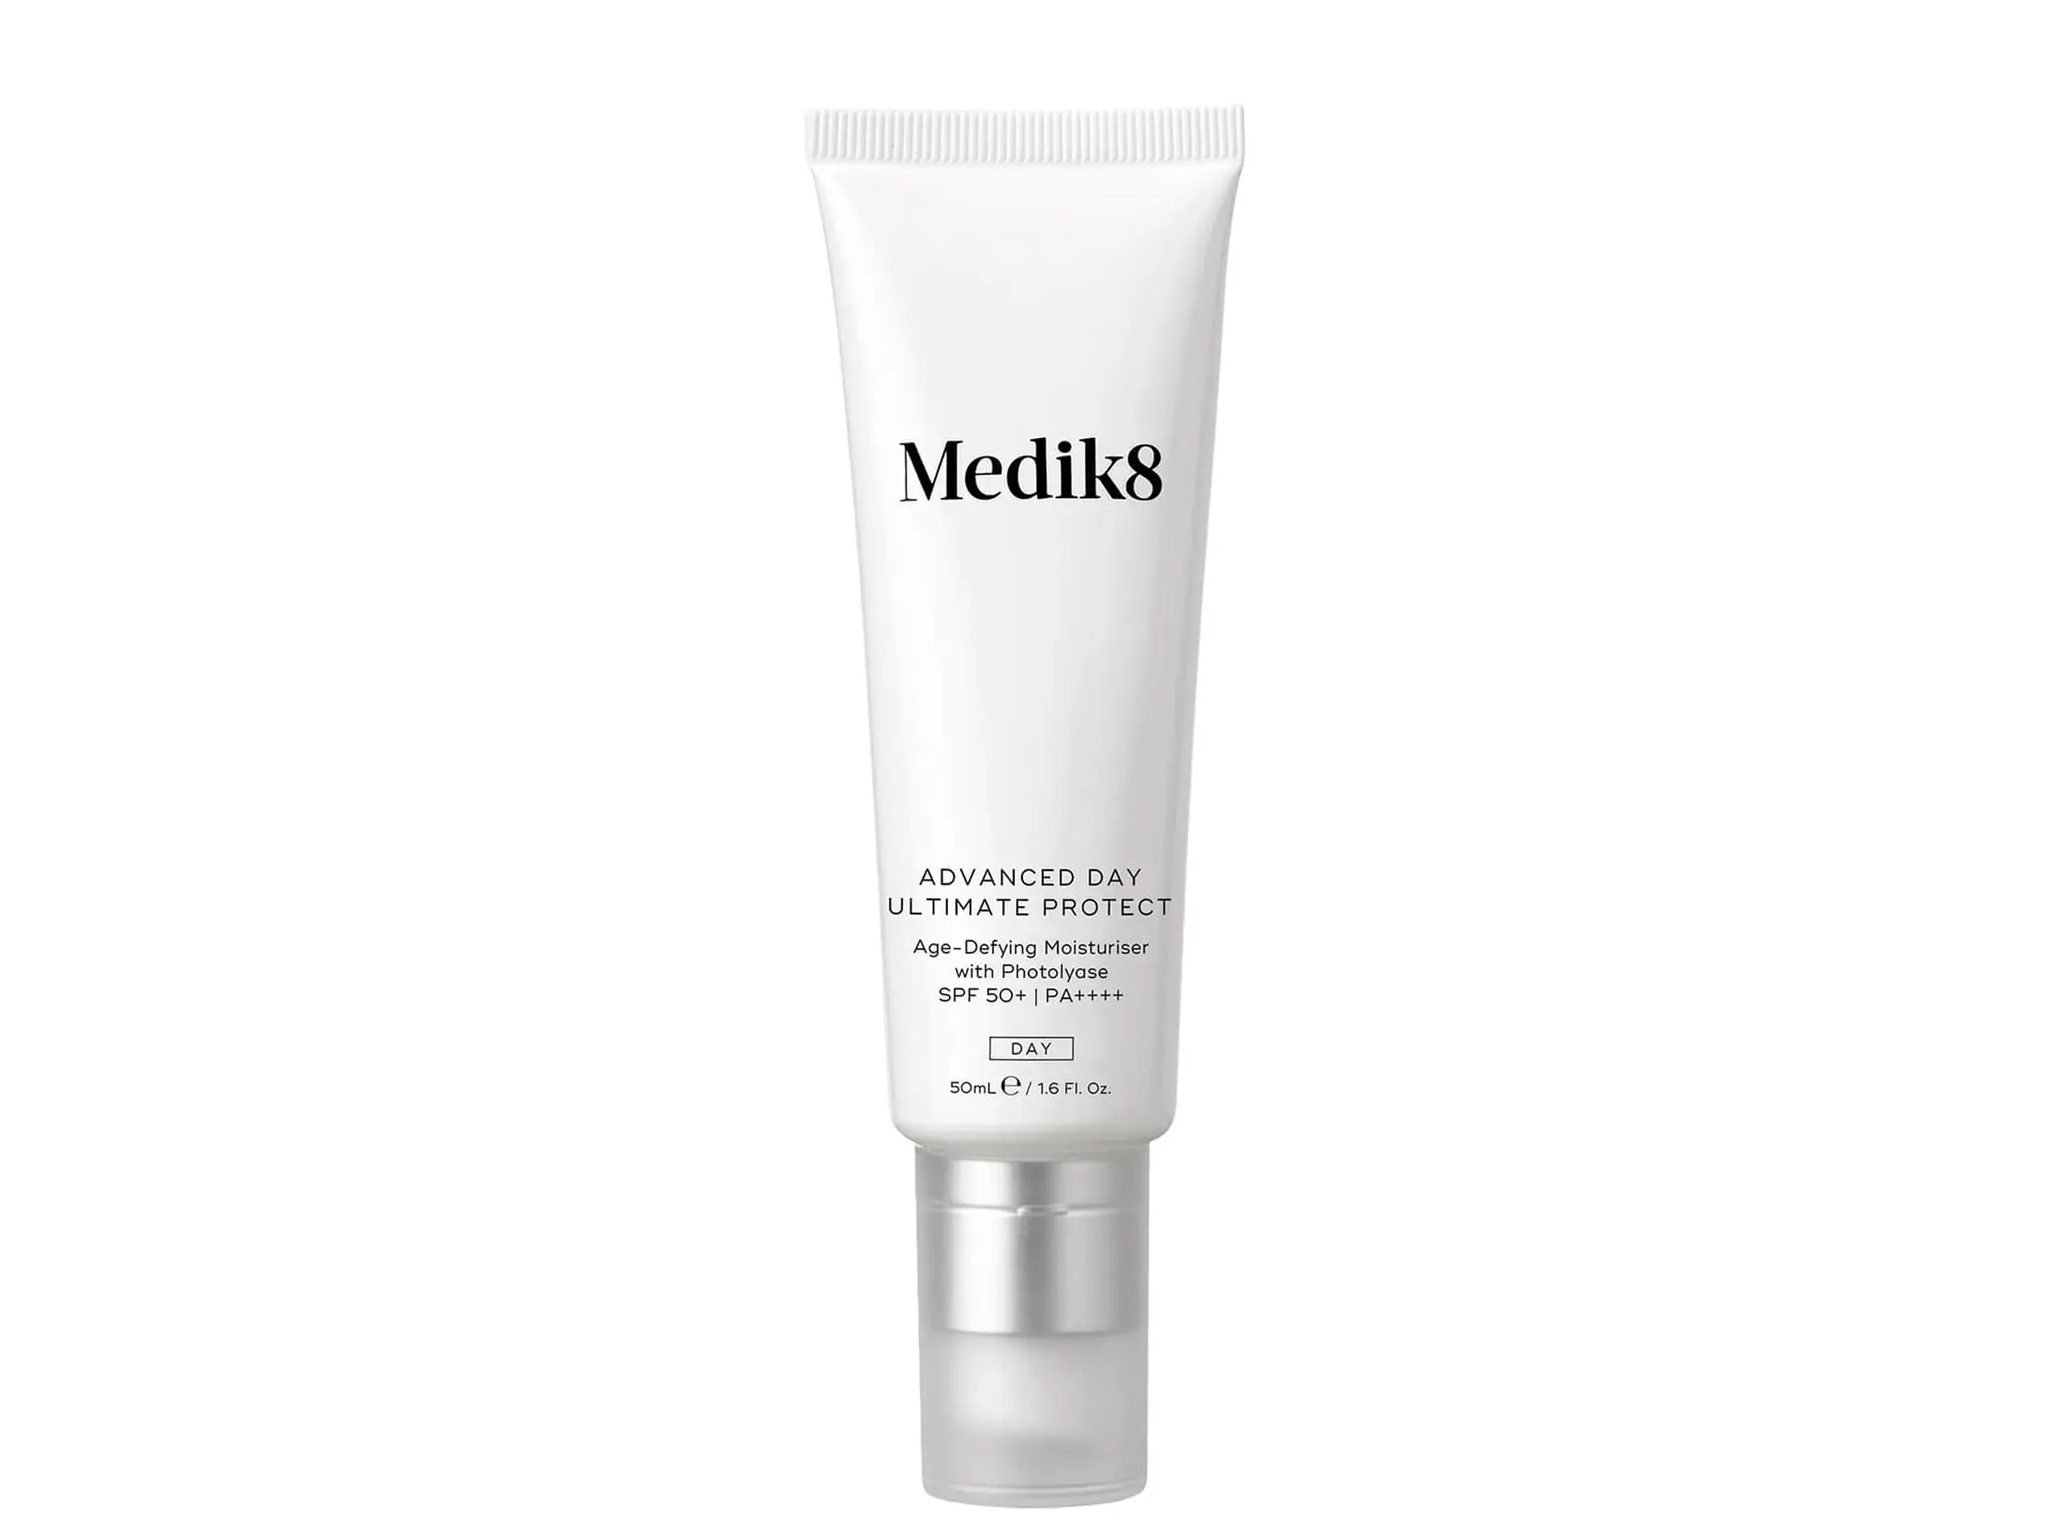 medik8-best-moisturiser-for-sensitive-skin-indybest.png